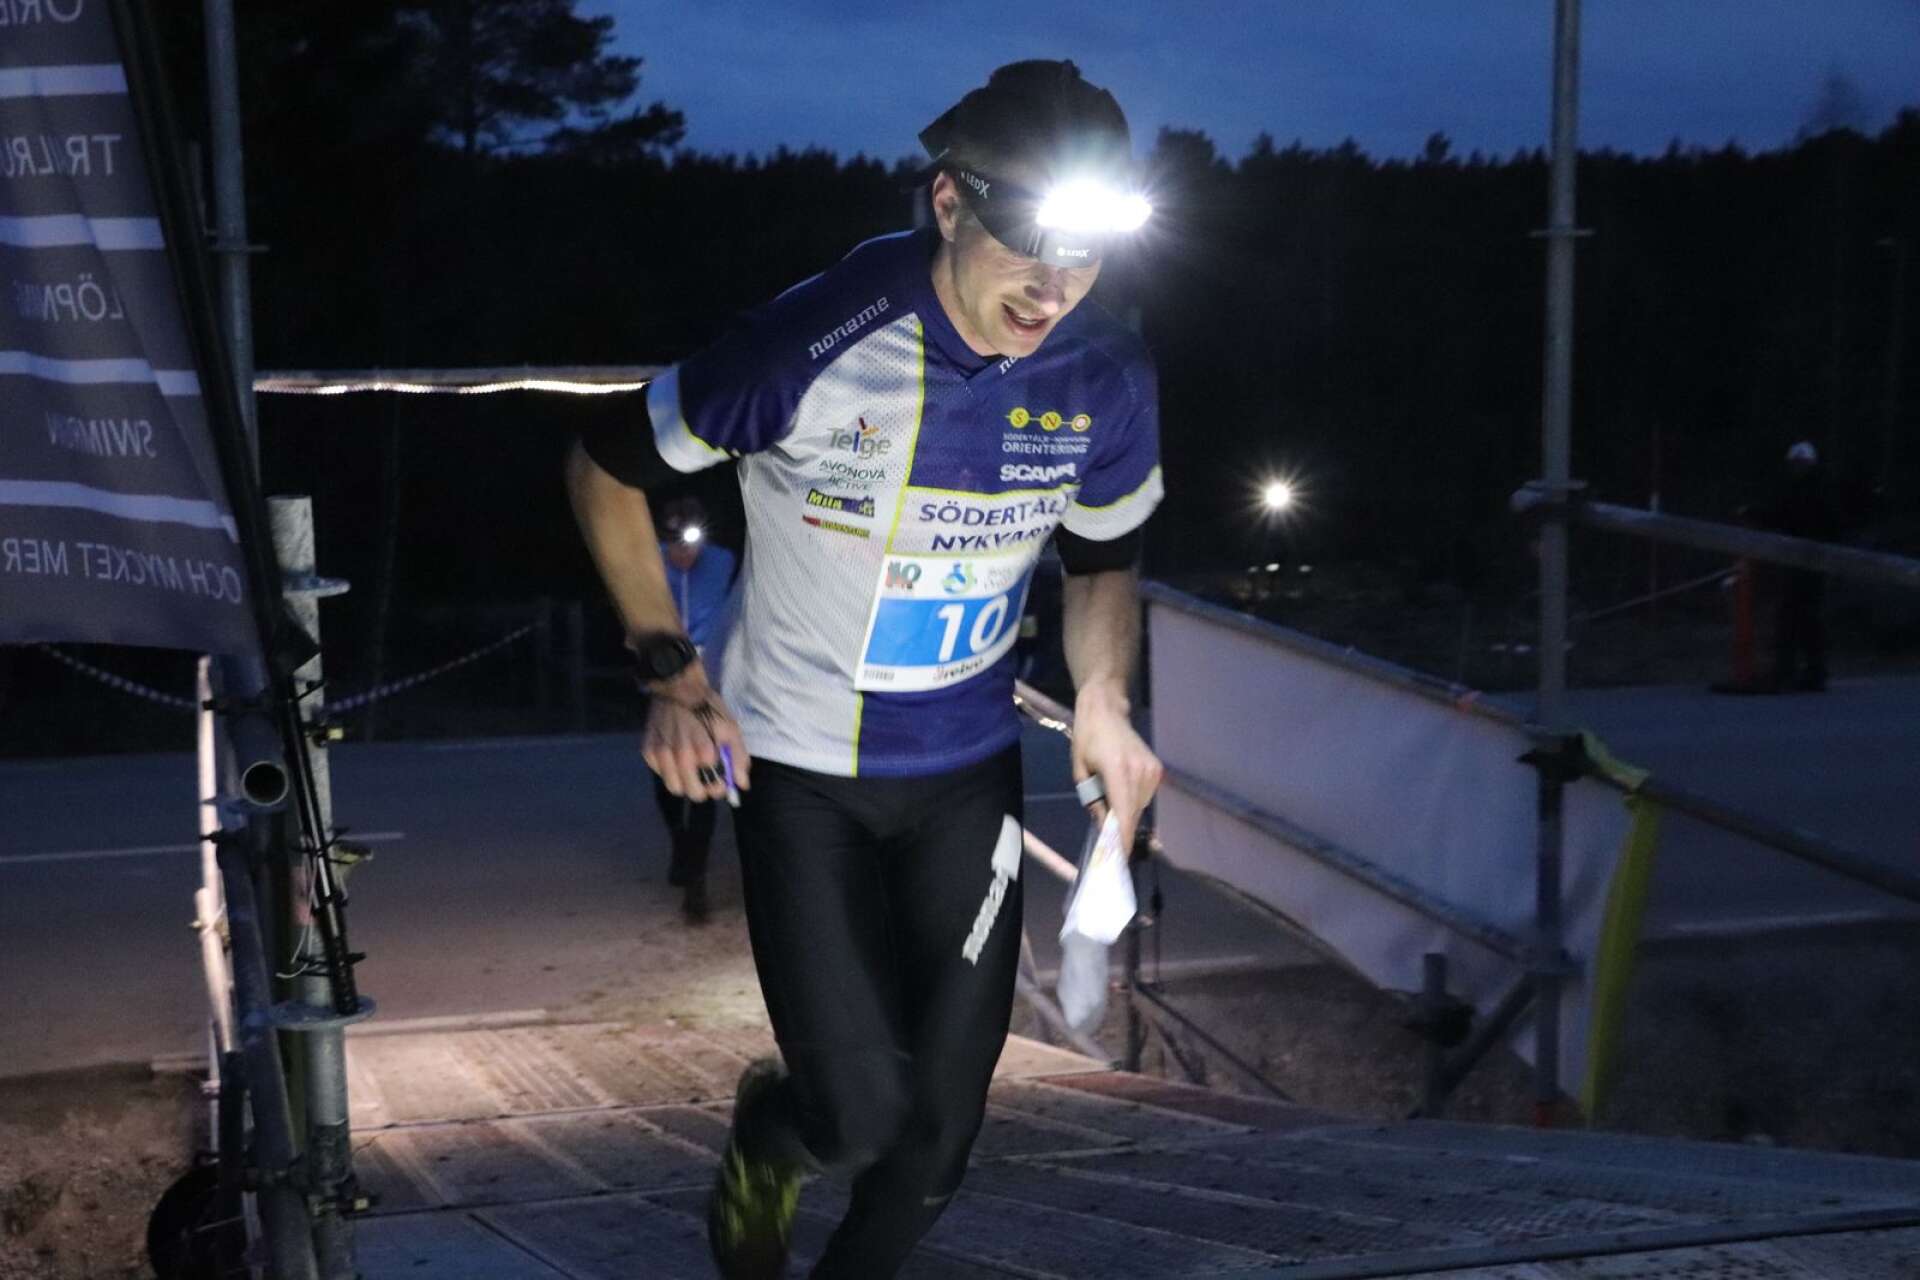 Tidigare Karlstadsorienteraren Jonas Leandersson är numer mest maratonlöpare och landslagstränare för sprintlandslaget i orientering. Det hindrar honom inte från att prestera i skogen. Han förde upp sitt Södertälje-Nykvarn till ledning på sjunde sträckan.